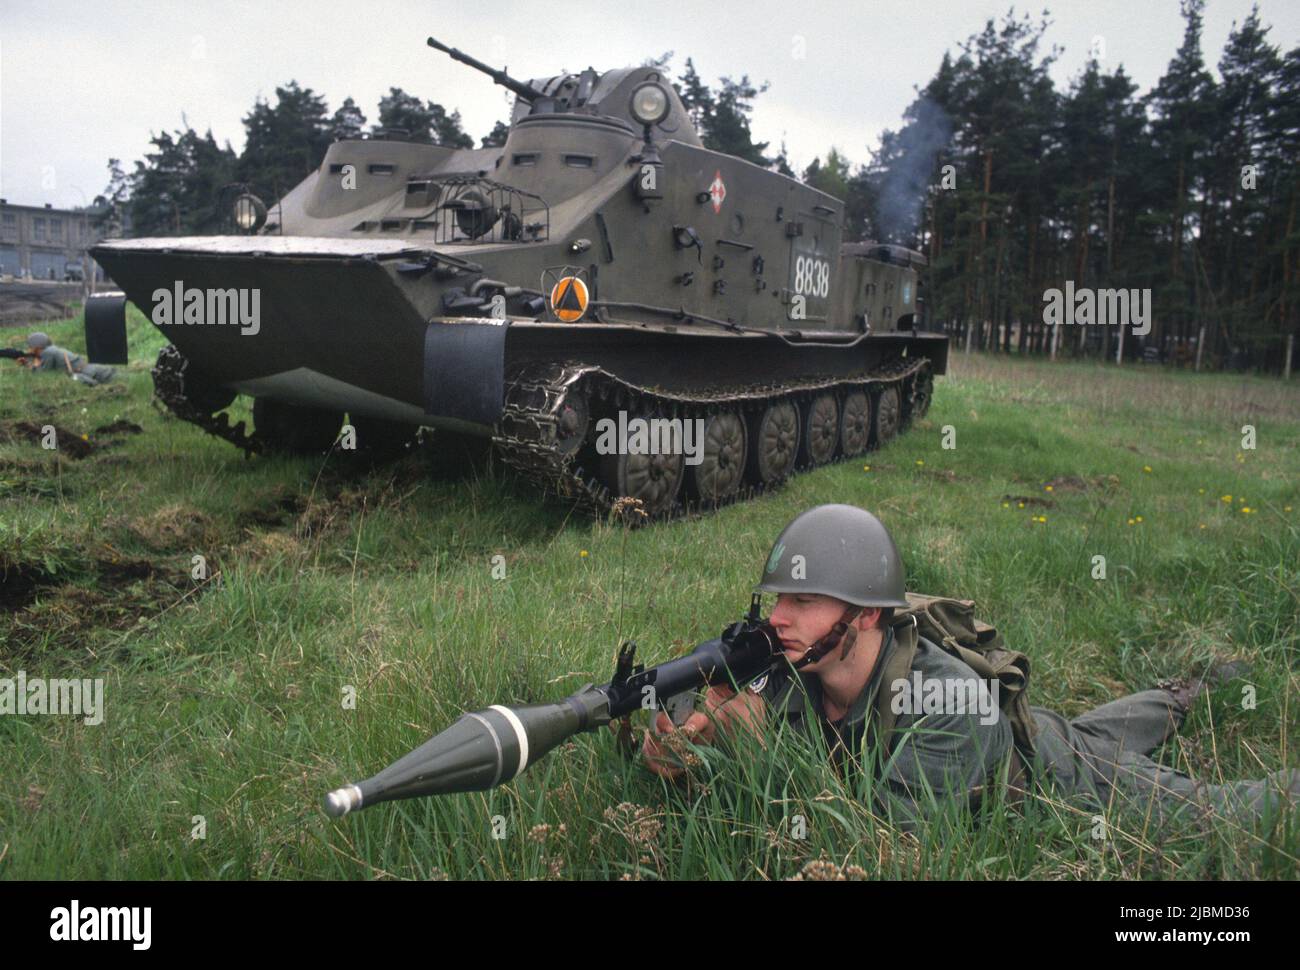 - Armée polonaise, division d'infanterie amphibie de Lebork, véhicule blindé OT 72 C - Forze Armate Polacche, divisione fanteria anfibia di Lebork. Veicolo corazzati OT 72 C. Banque D'Images